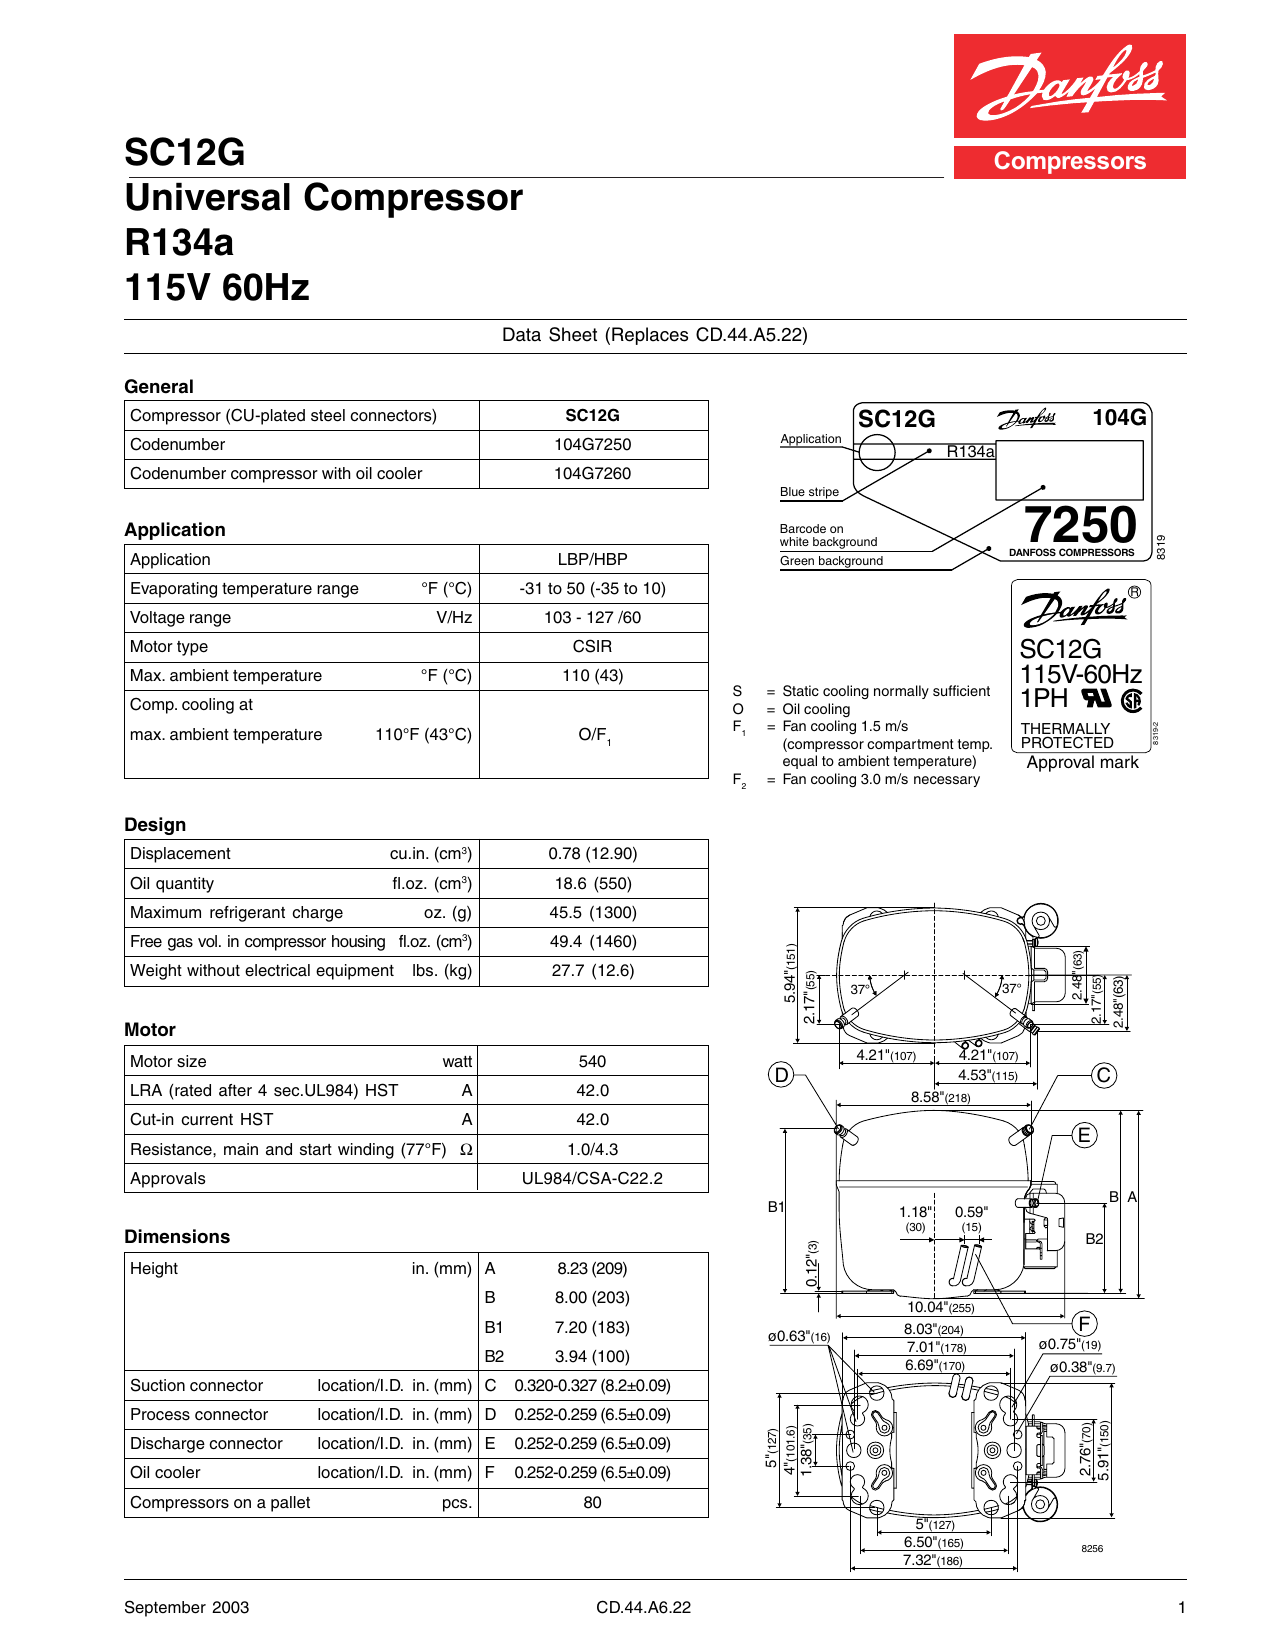 115V Compressor Secop SC12G 104G7250 identical as Danfoss R134a refrigeration 